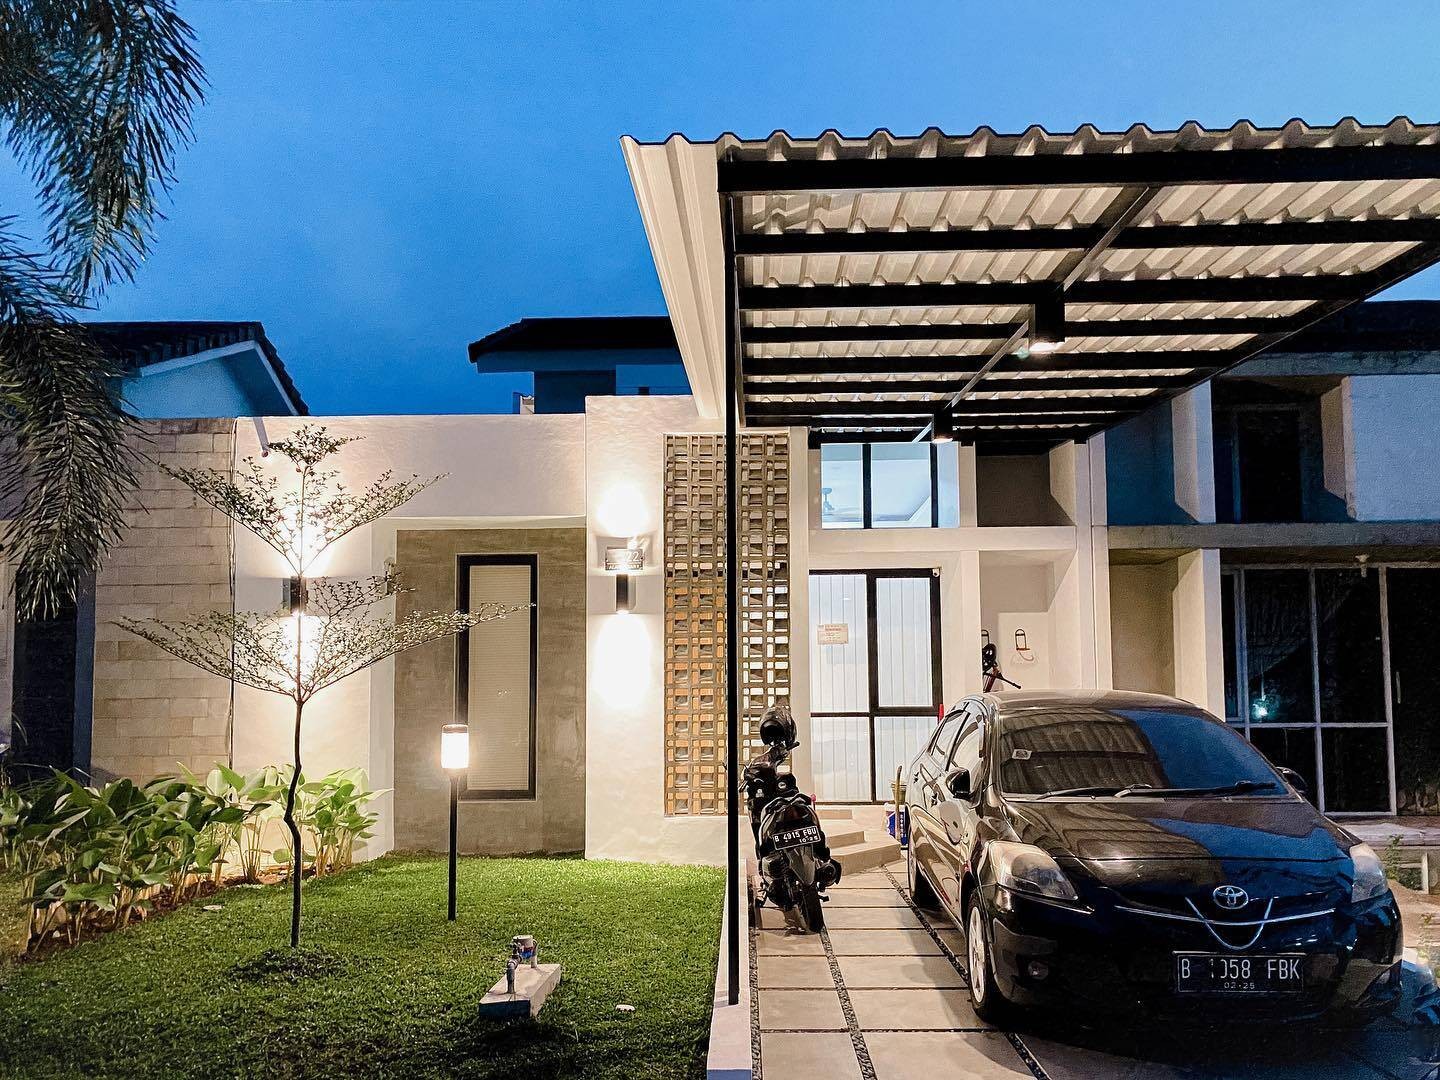 
Căn nhà hai tầng với thiết kế hiện đại với các đường nét vuông vắn, có thảm cỏ xanh và gara để xe phía trước
